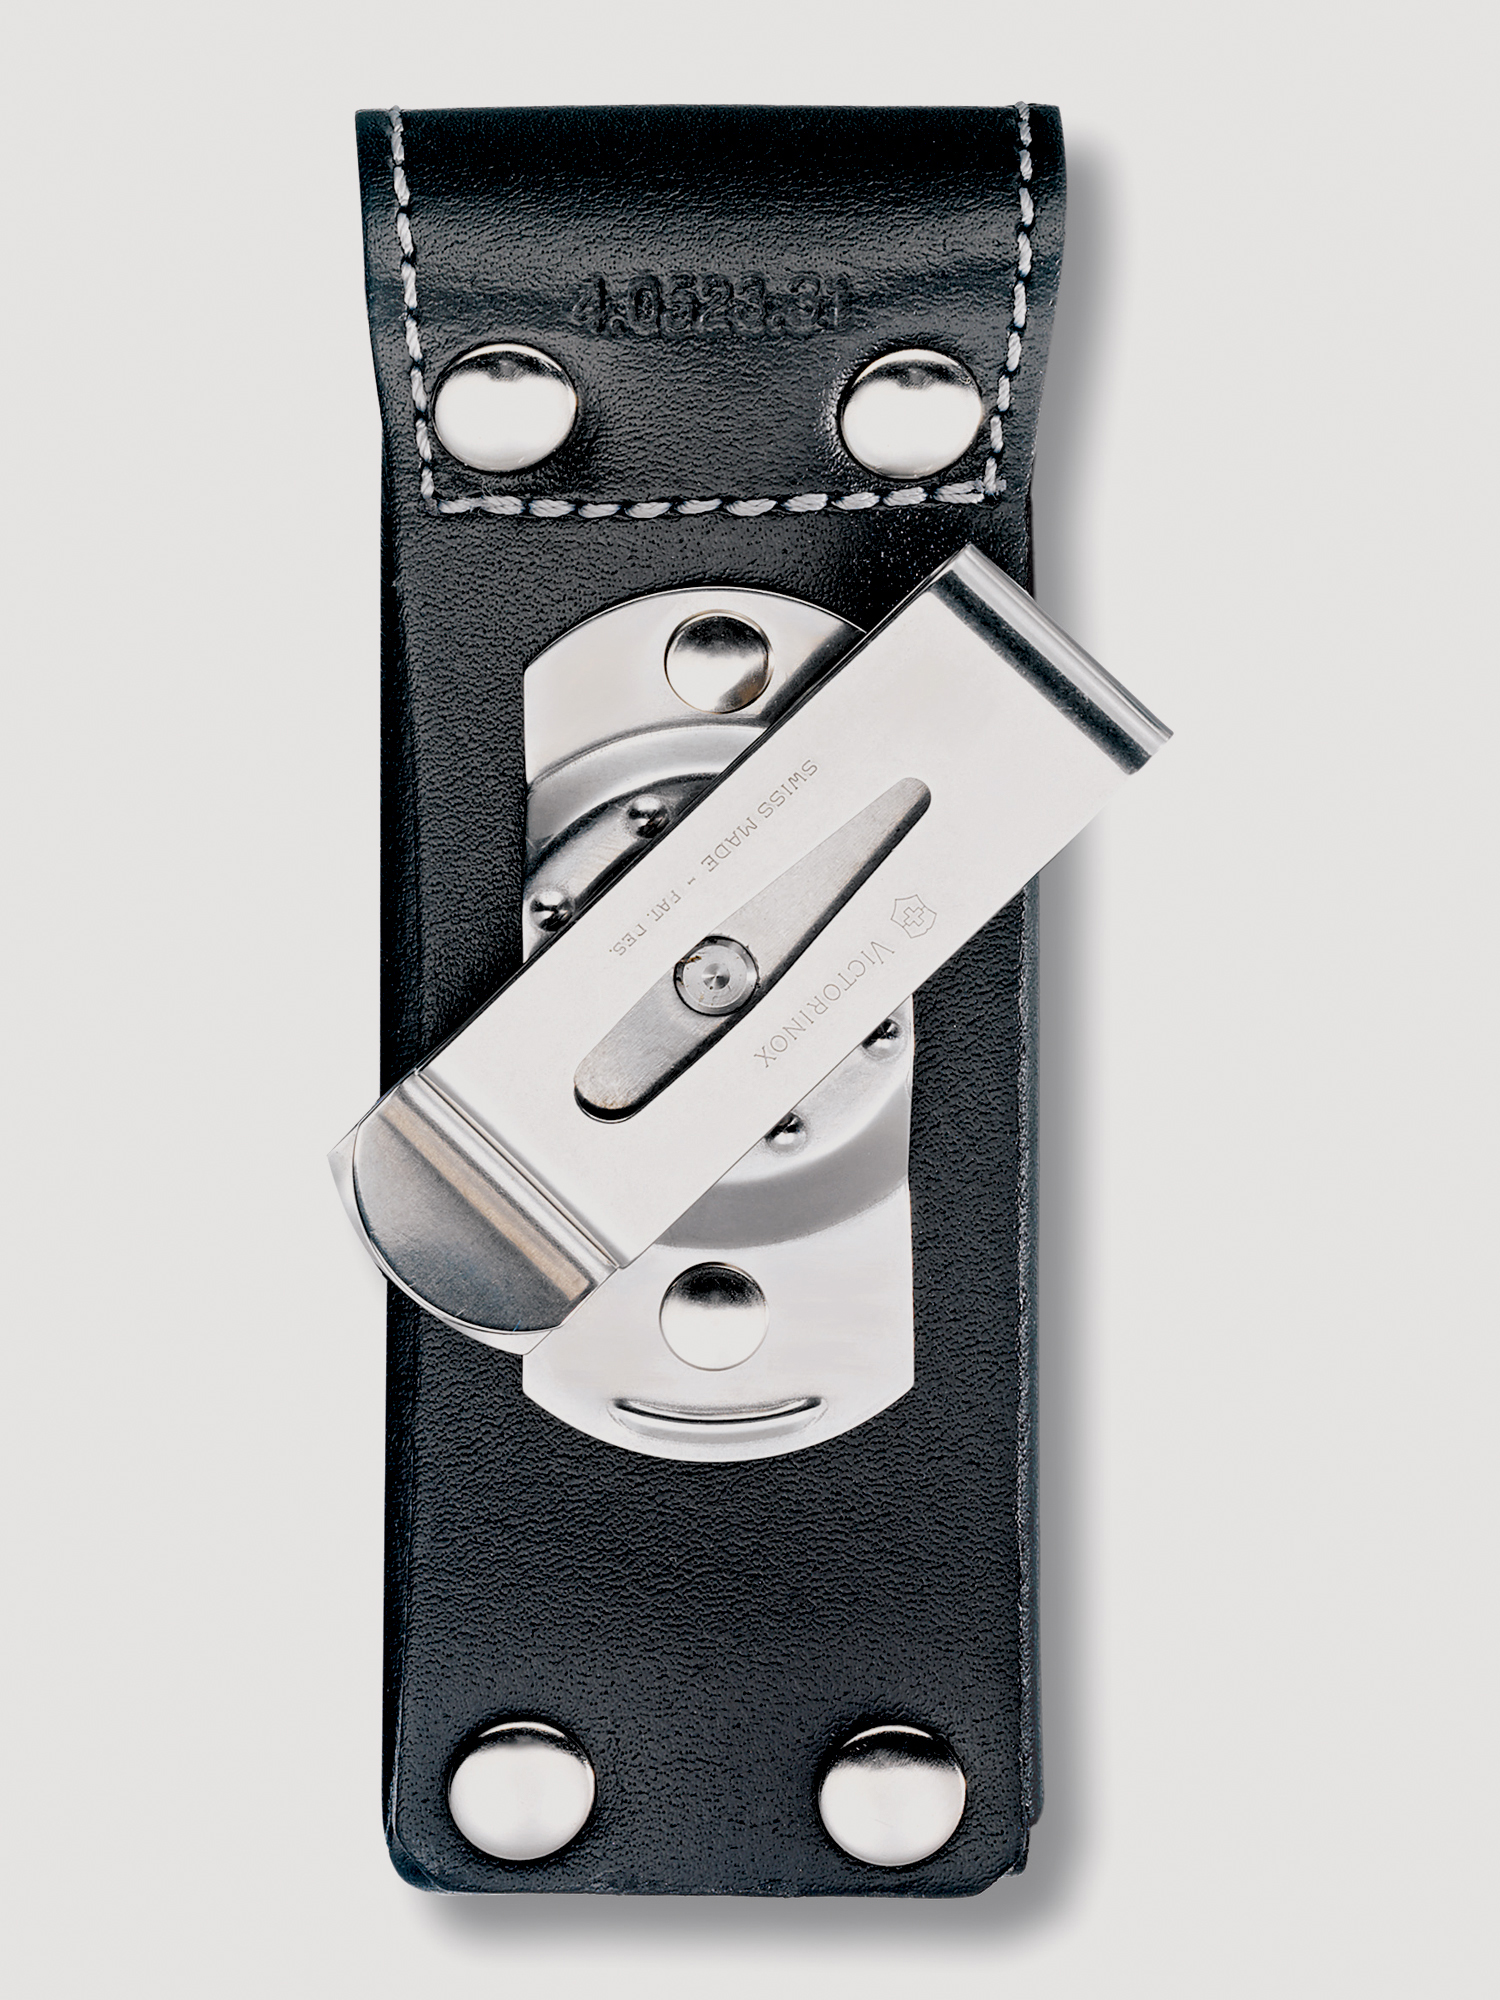 Чехол на ремень VICTORINOX для ножей 111 мм толщиной 3 уровня, с поворотной клипсой, кожаный, чёрный, Черный ремень чехол miggo для зеркальных камер серая галька